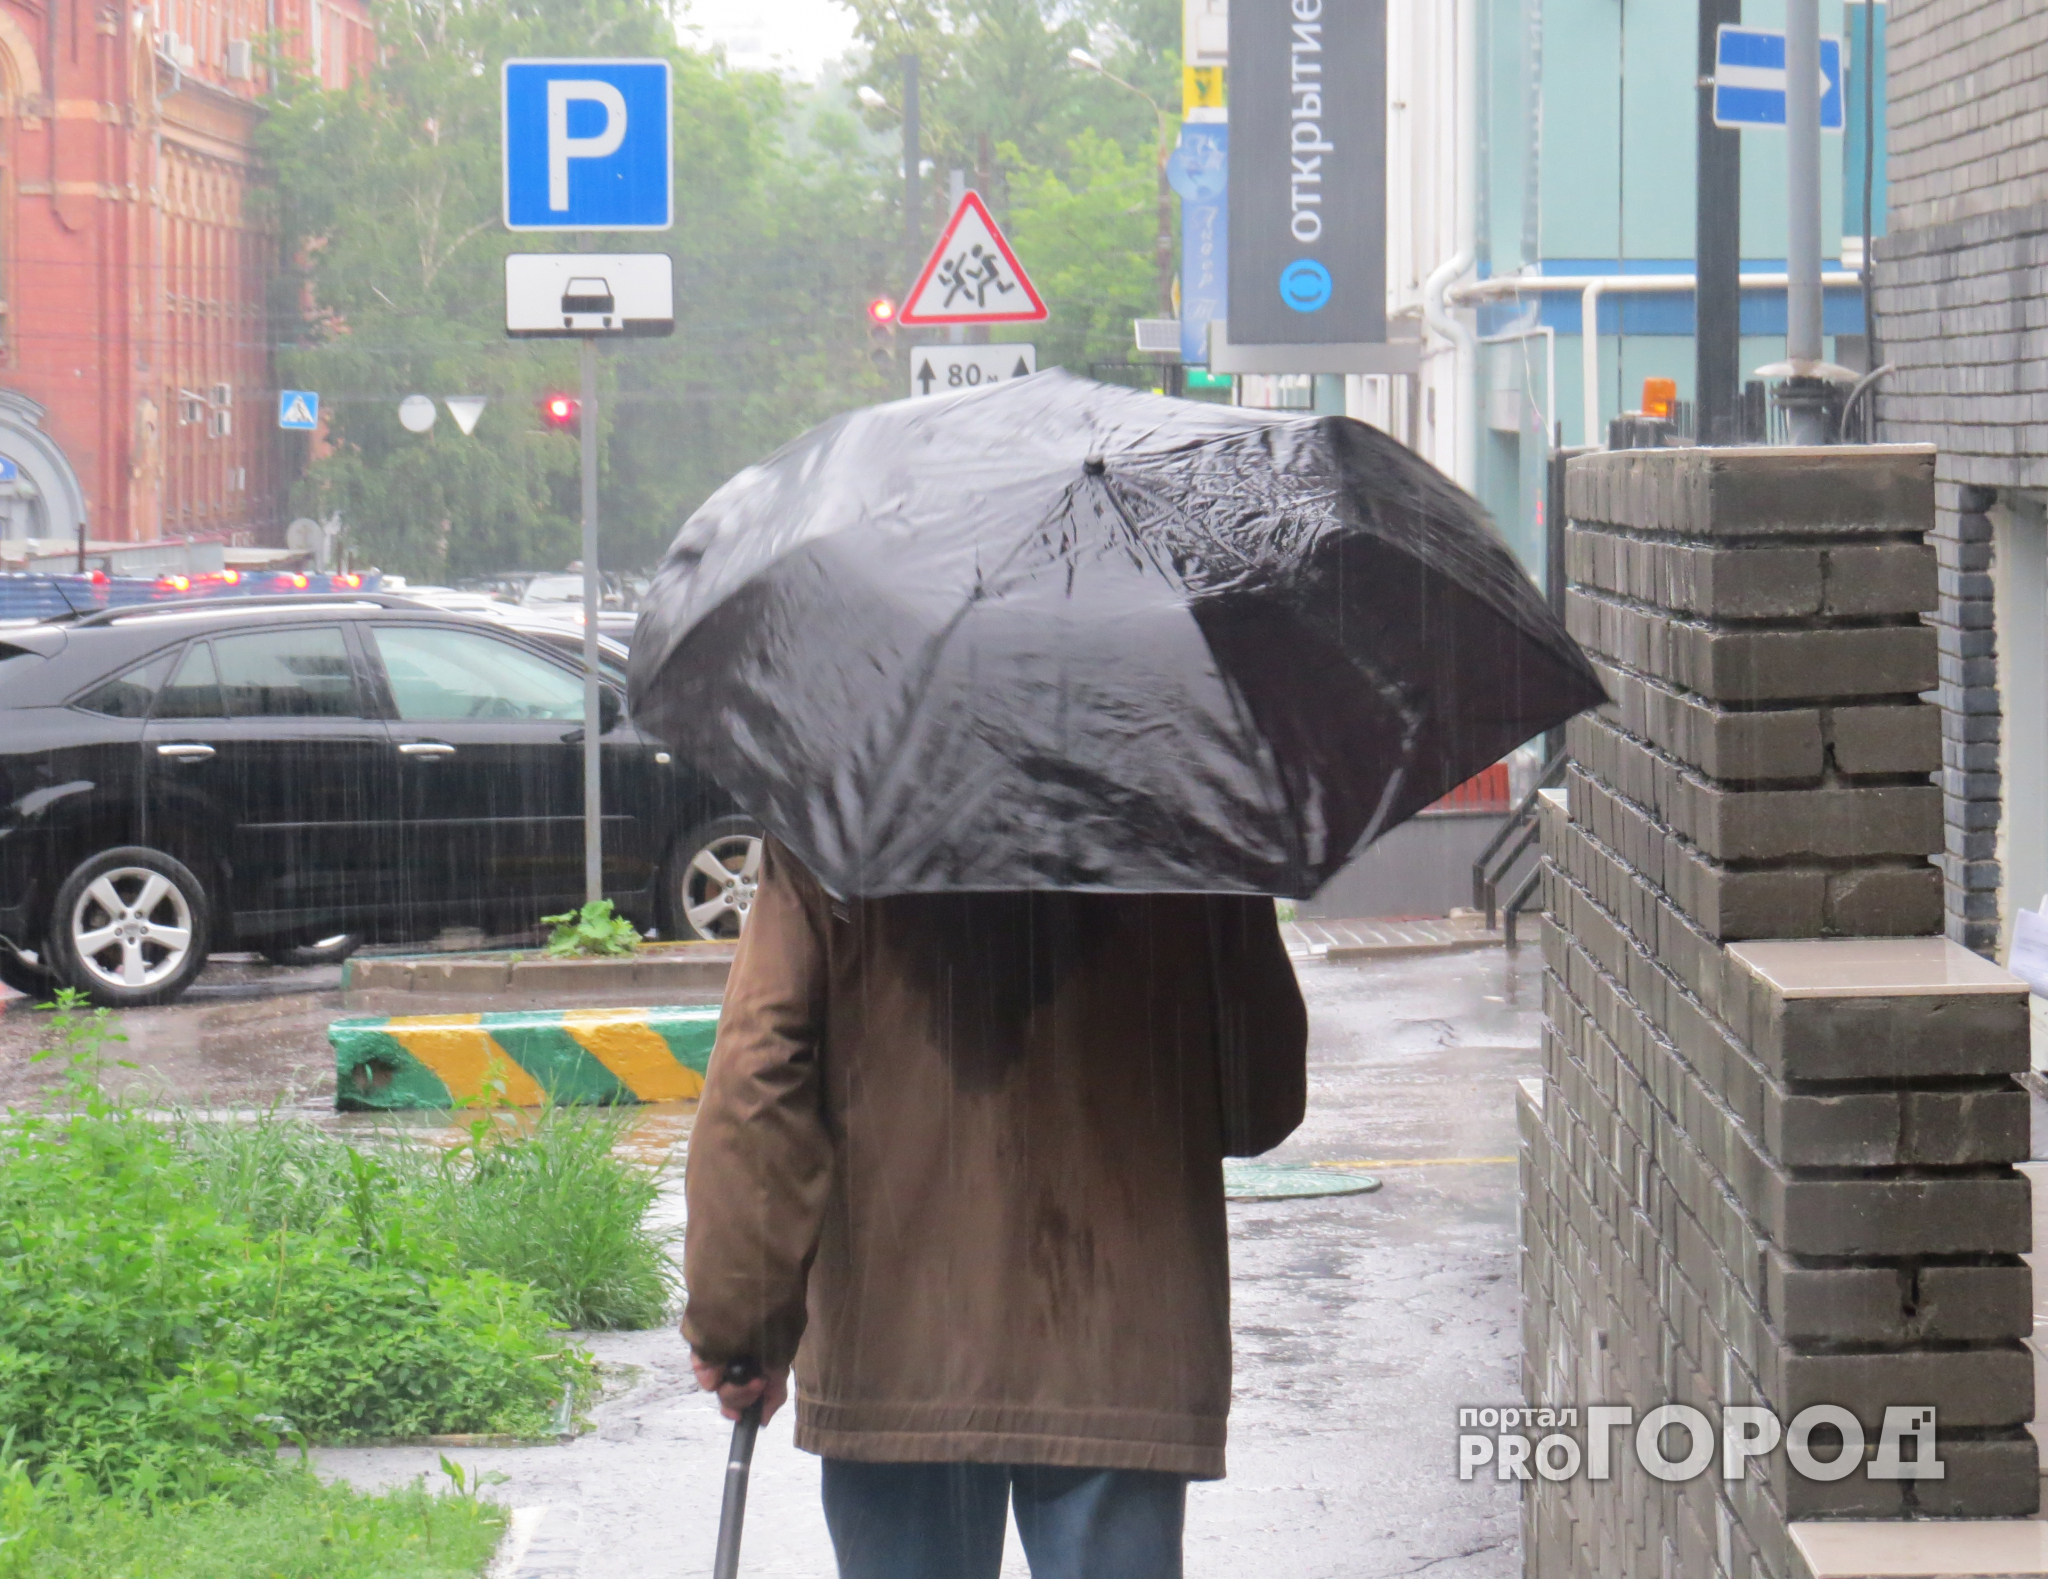 Прогноз погоды в Нижегородской области на 28 августа